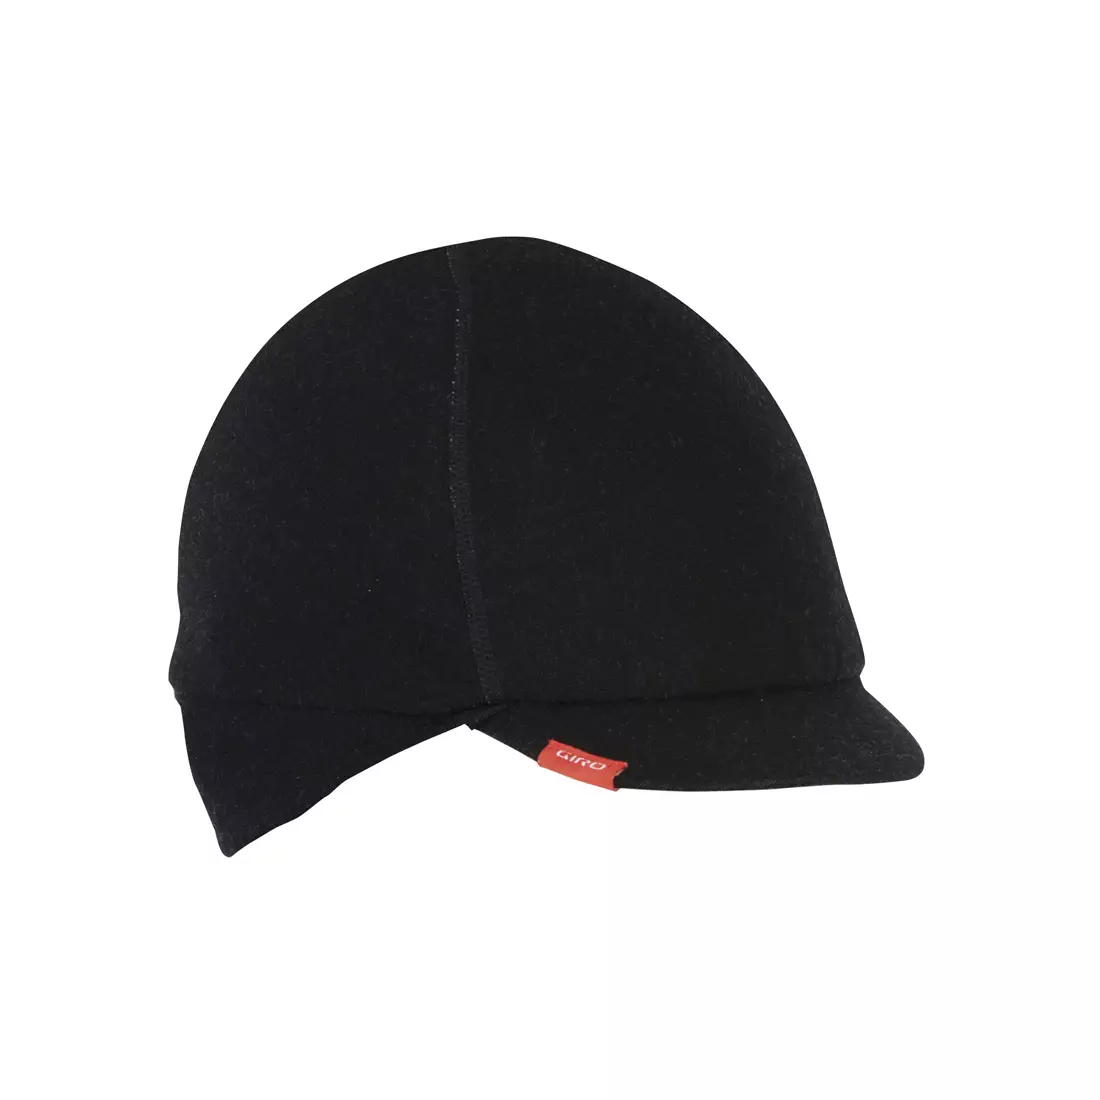 GIRO zimowa czapka rowerowa merino seasonal wool cap black GR-7052674